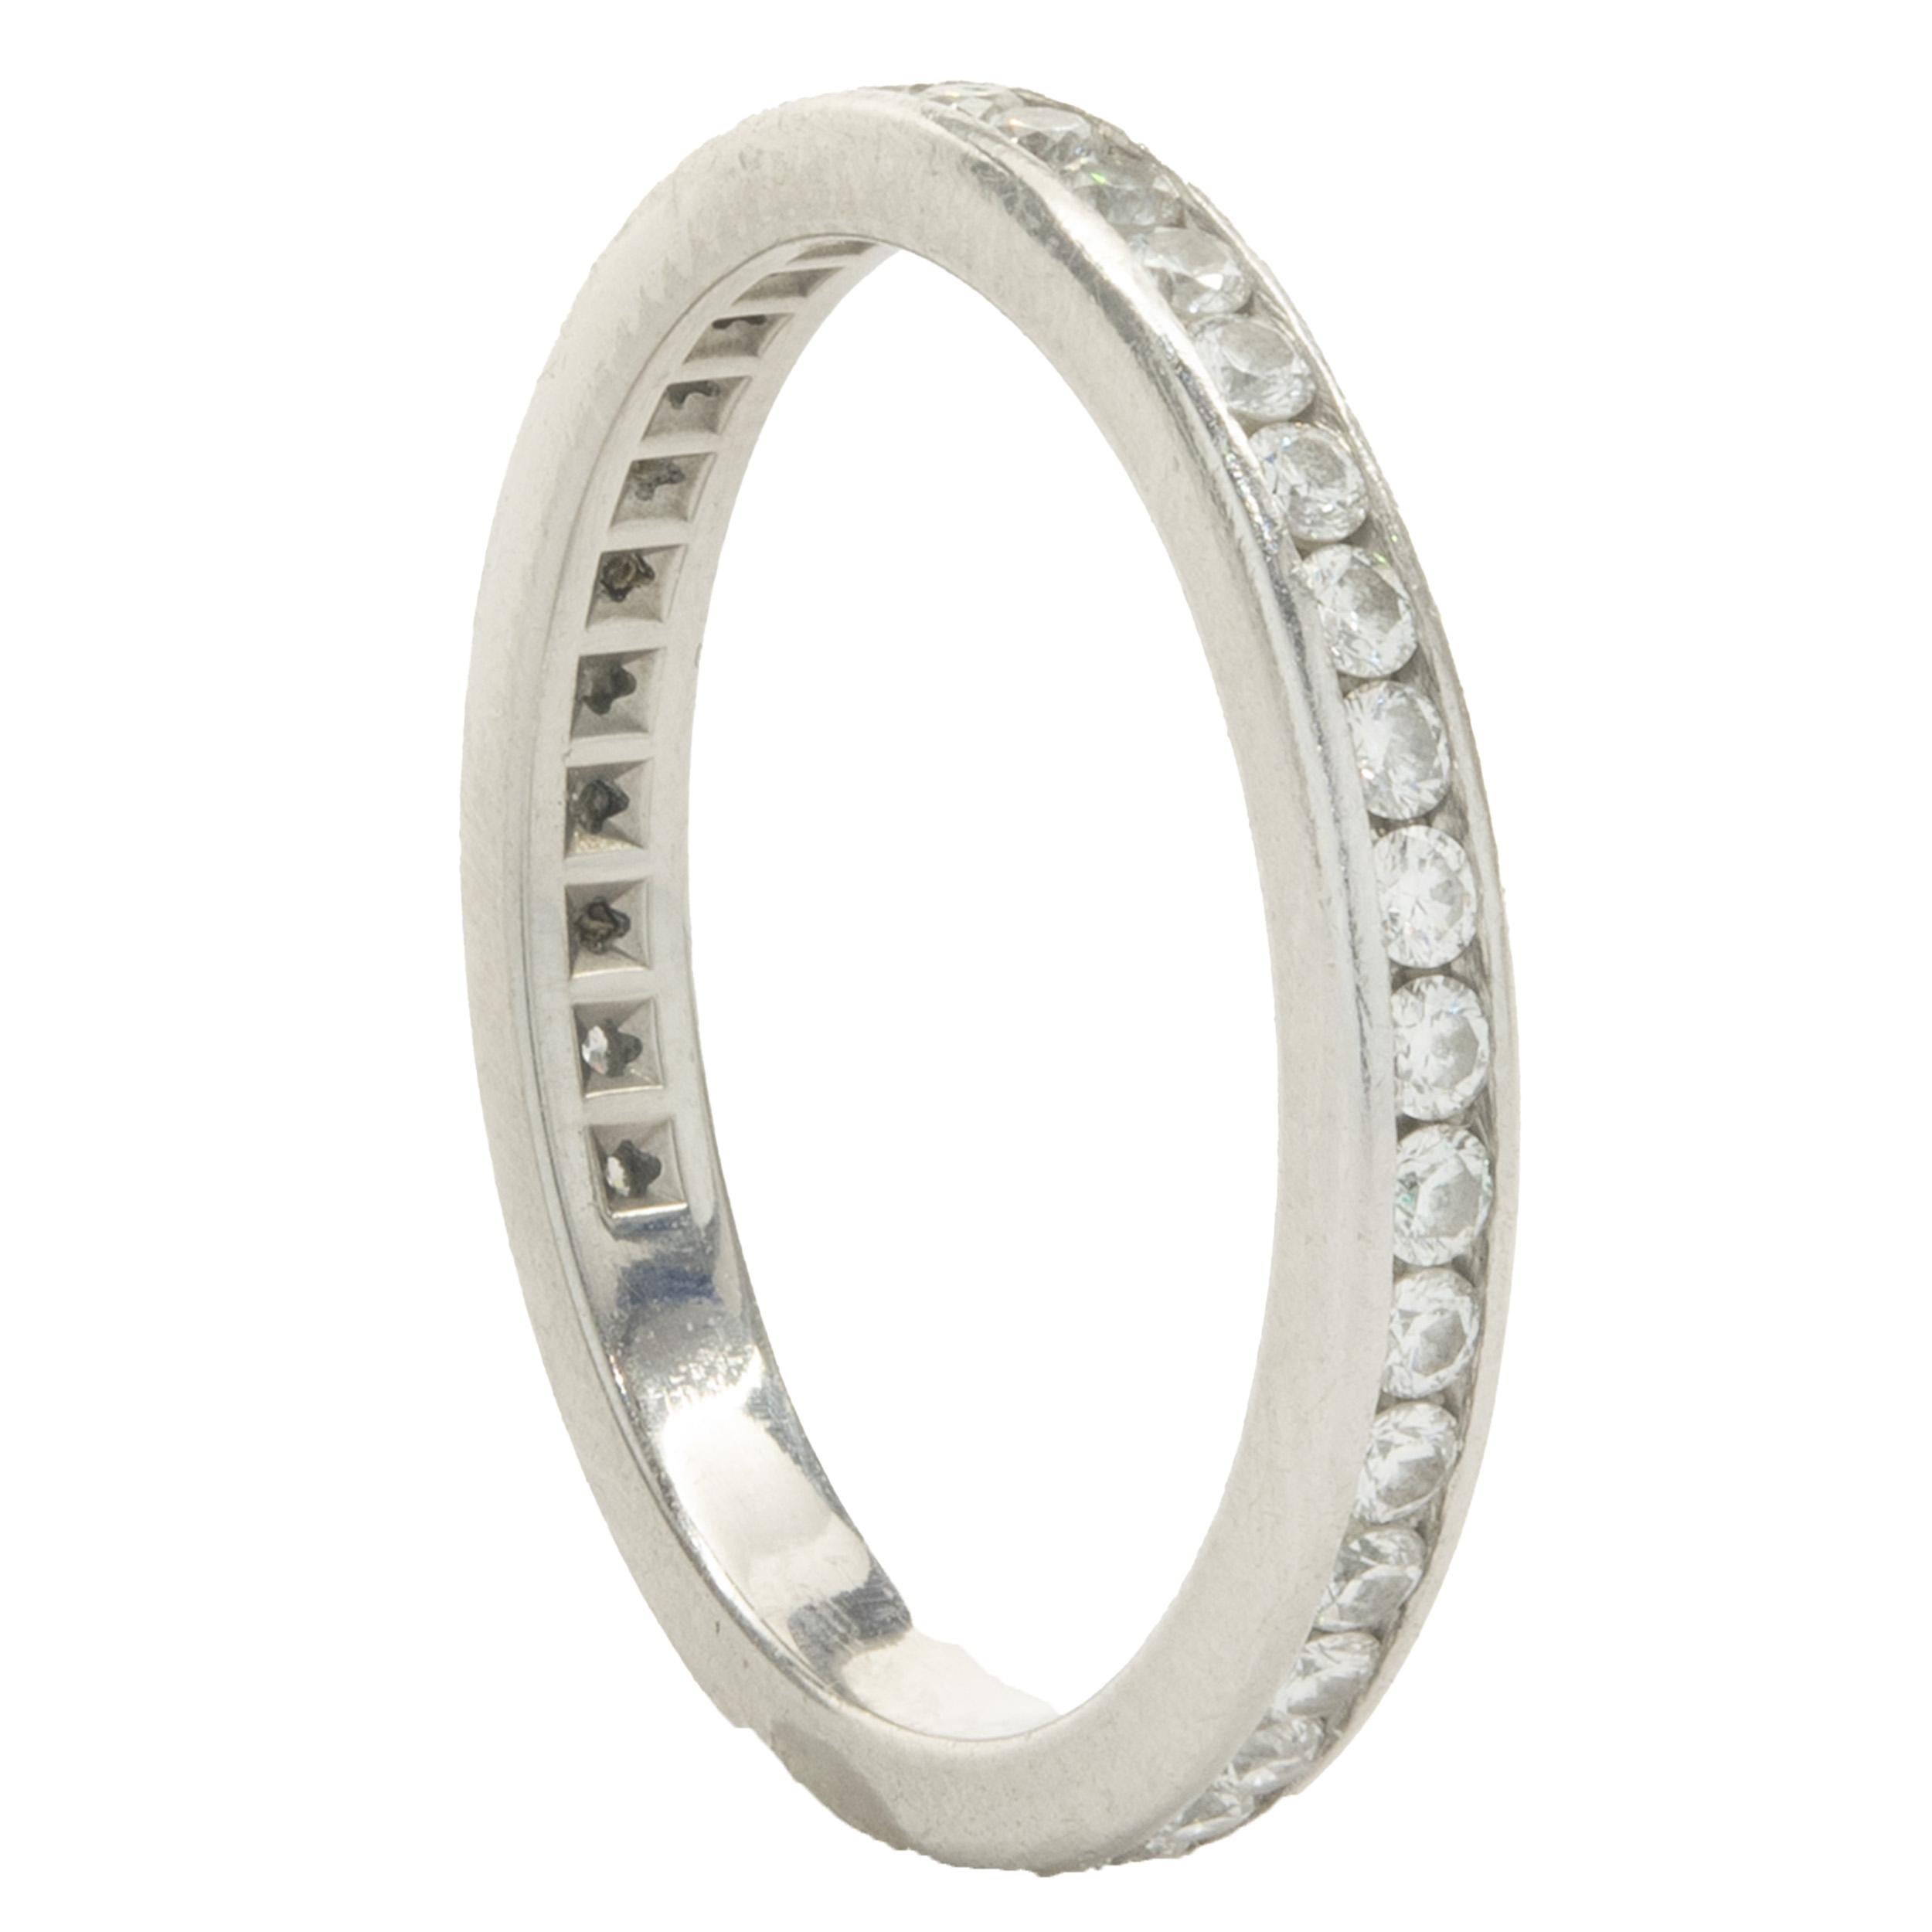 Designer : Tiffany & Co. 
Matériau : Platine
Diamant : 38 diamants ronds de taille brillant = 0,76cttw
Couleur : G 
Clarté : VS2
Dimensions : la partie supérieure de l'anneau mesure 2.2 mm de large
Taille : 5
Poids : 2.92 grammes